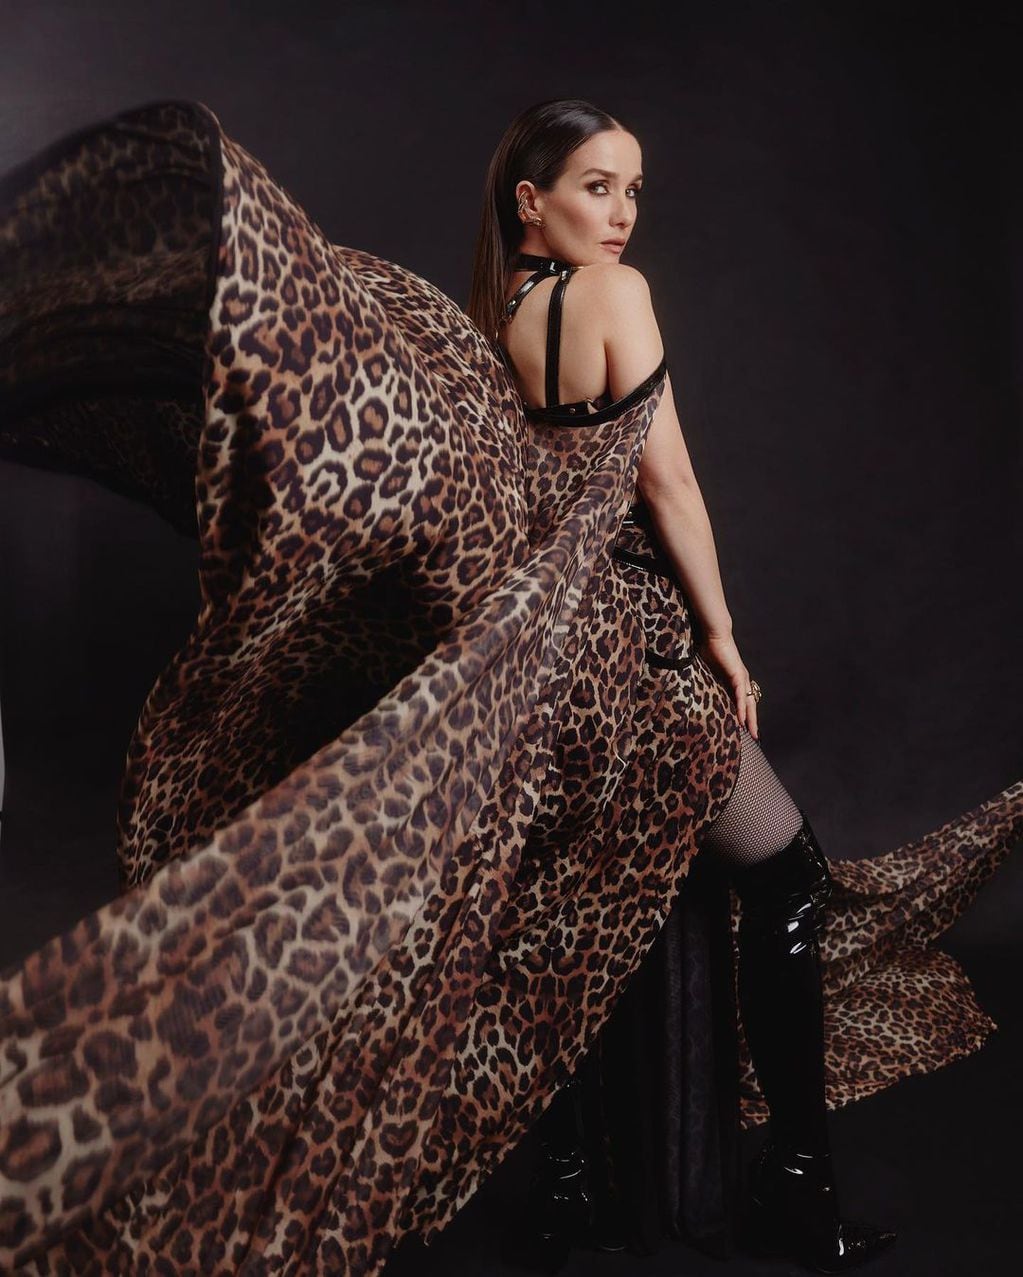 Leopardo y cuero: Natalia Oreiro cautivó a sus seguidores con un look muy rockero